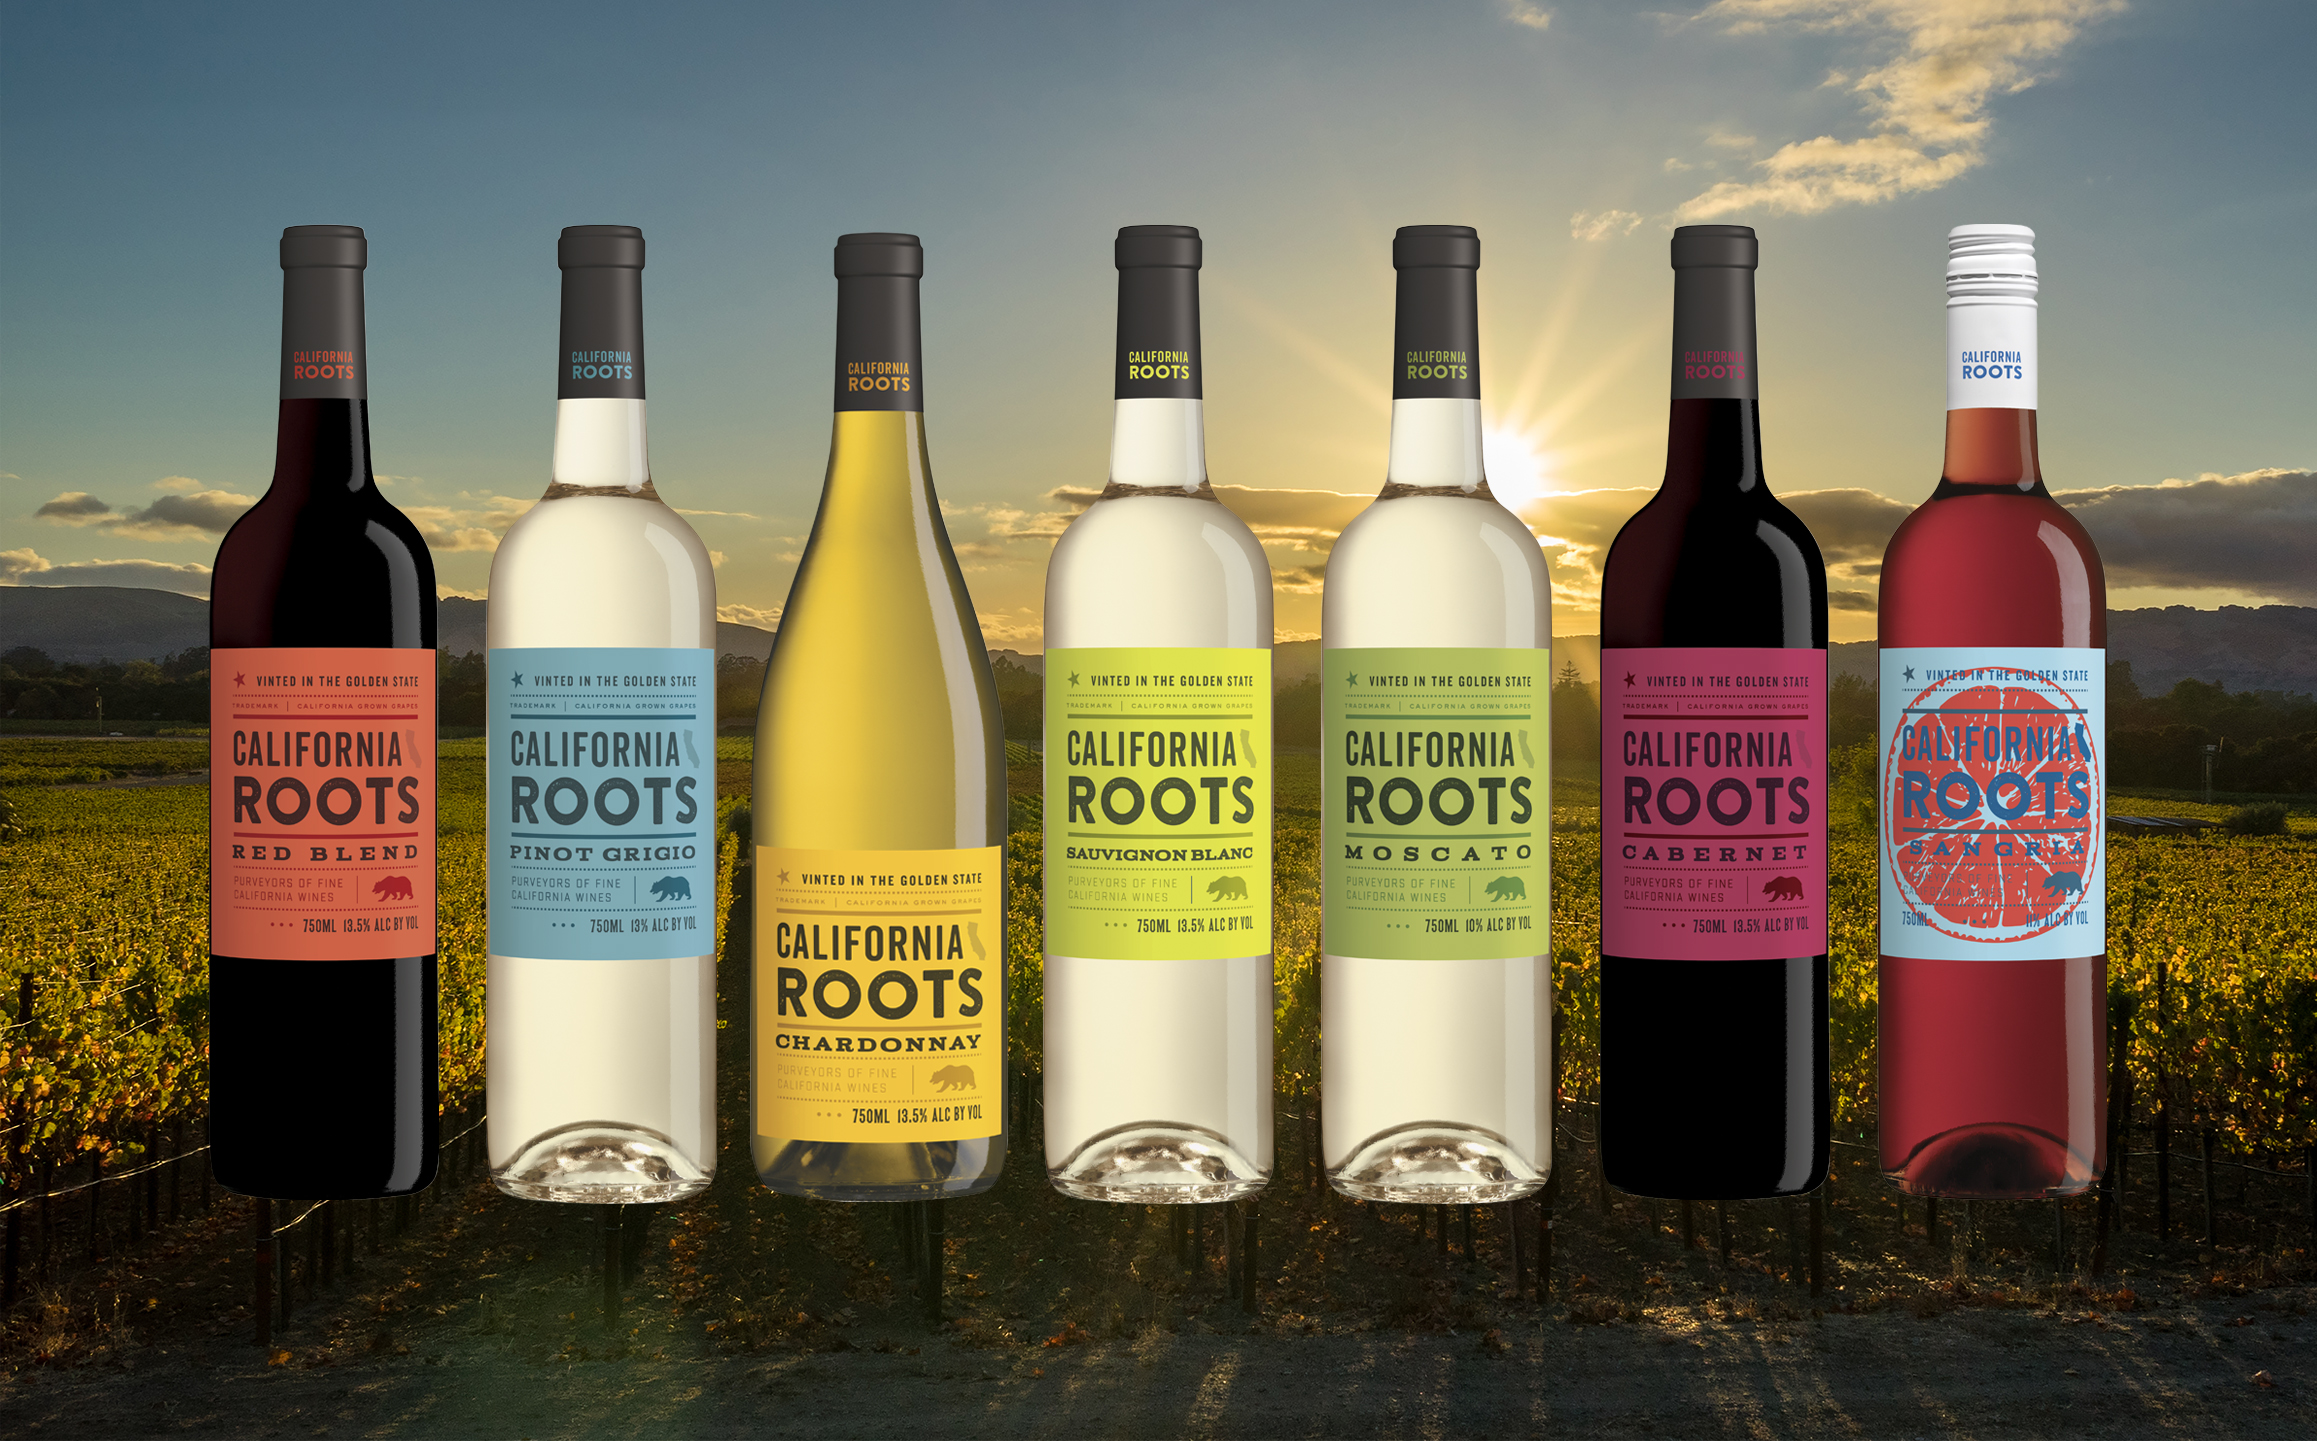 Afbeeldingsresultaat voor california Roots winery